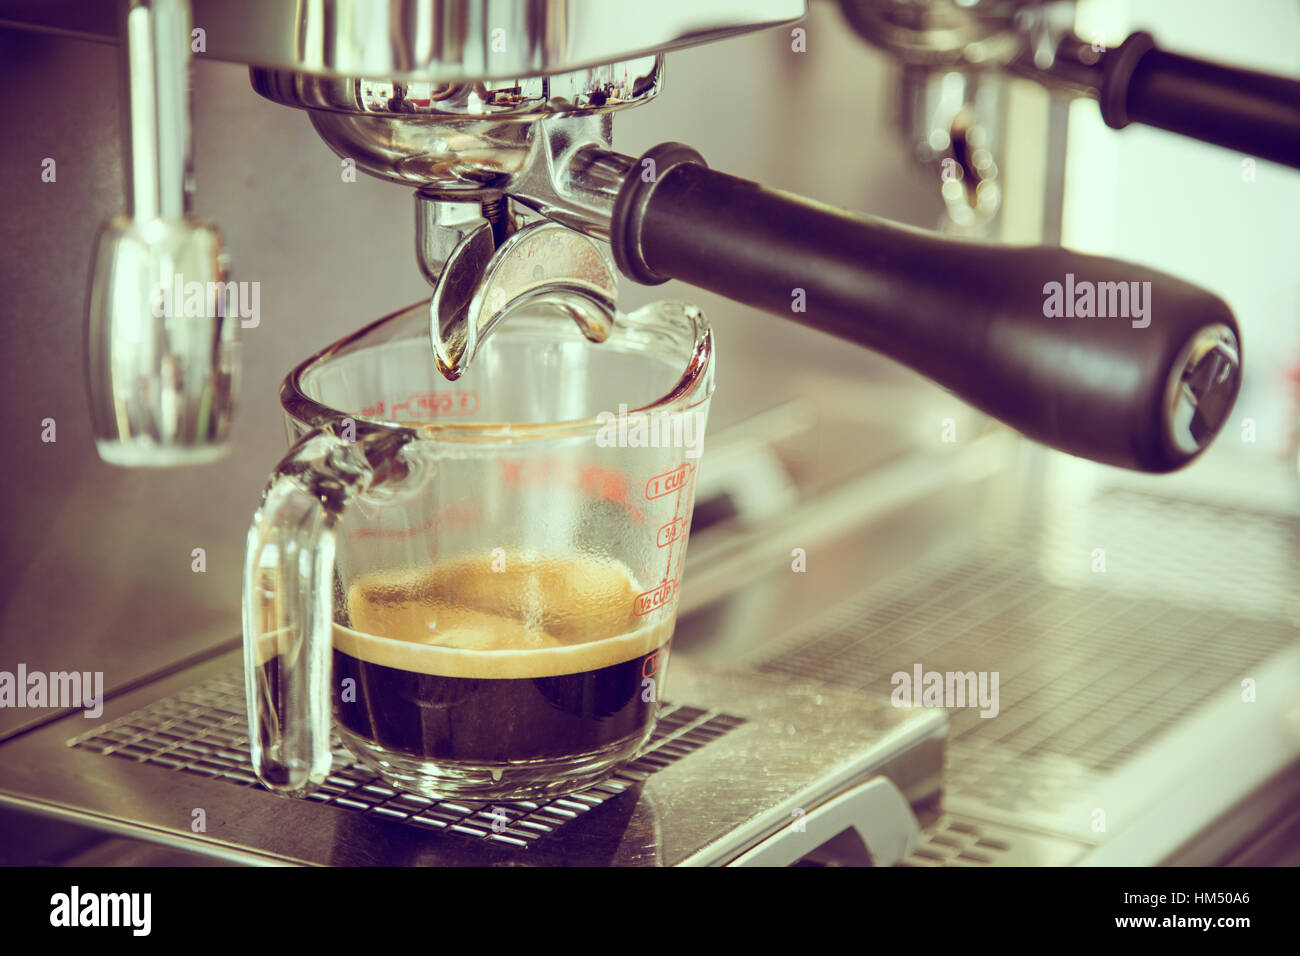 Espresso im Café bereitet (gefiltertes Bild verarbeitet Vintage-Effekt.) Stockfoto